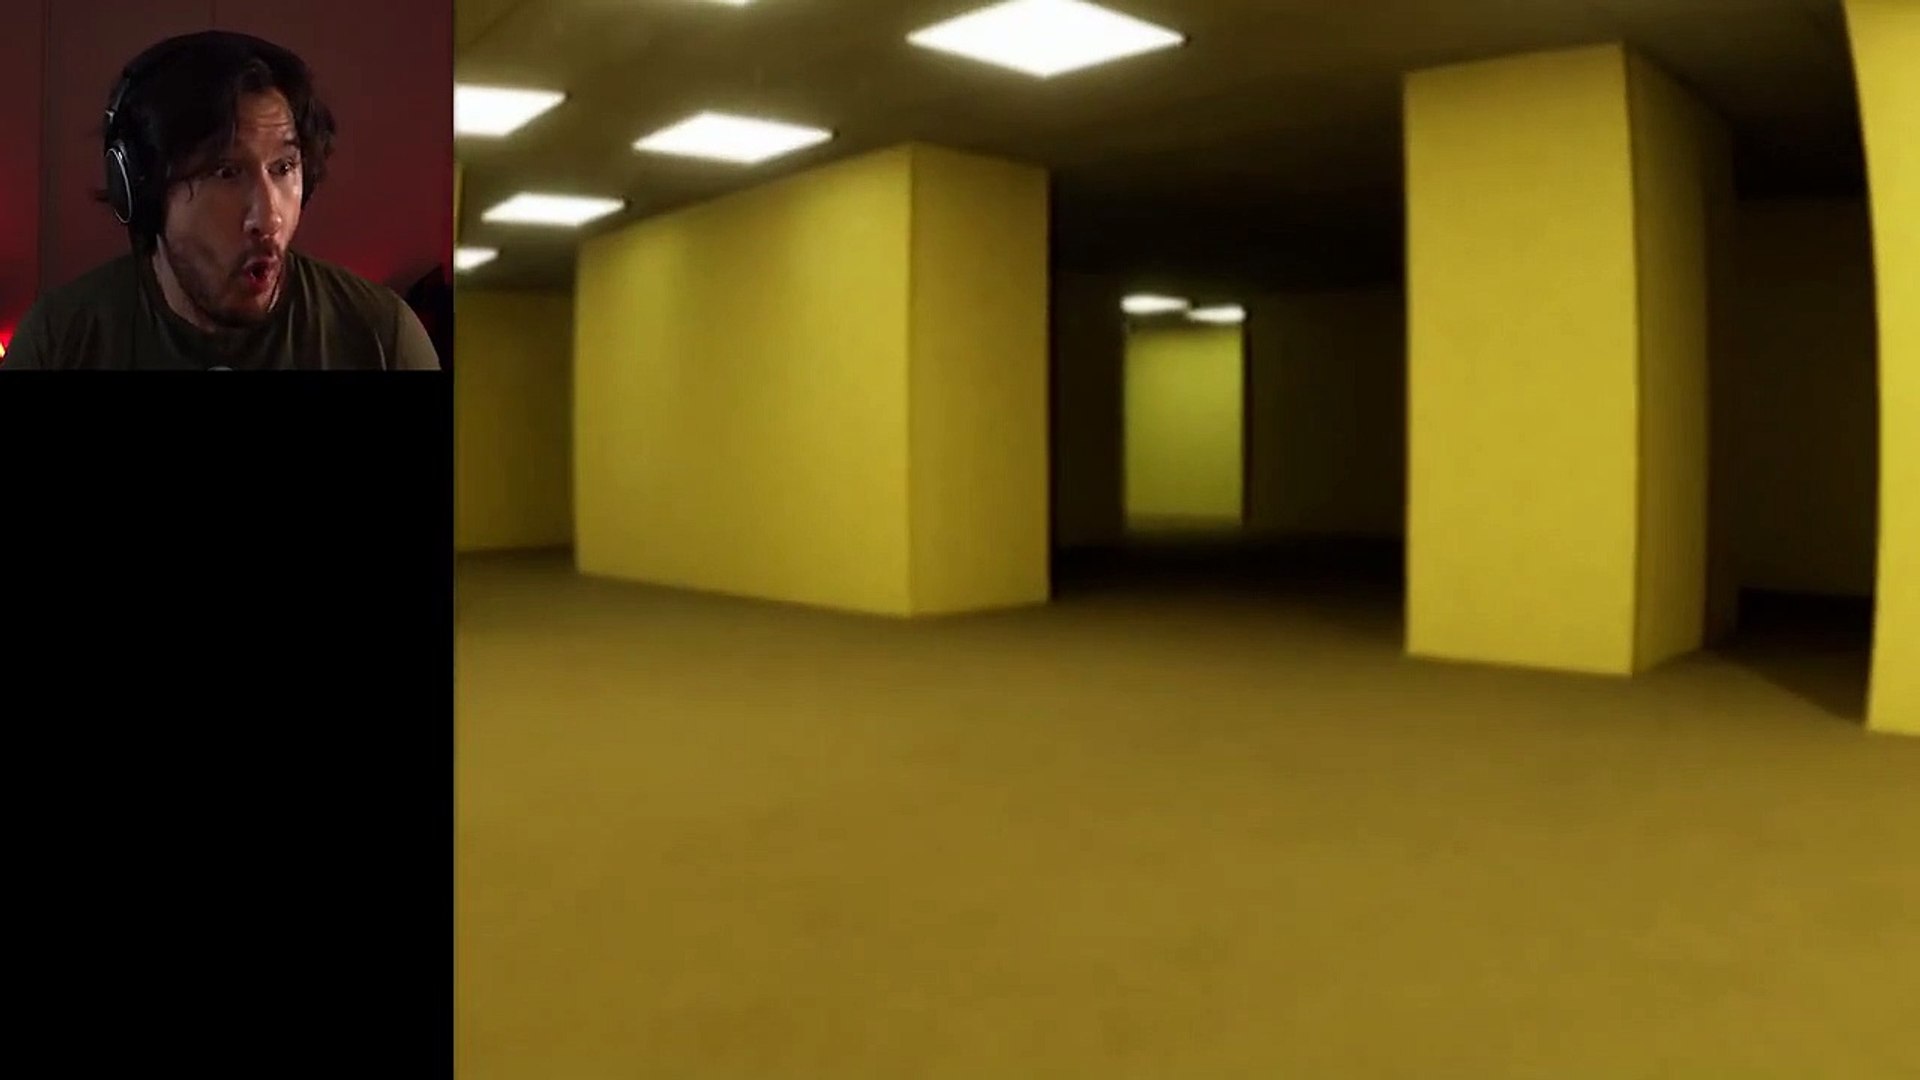 Backrooms (Minecraft Found Footage)